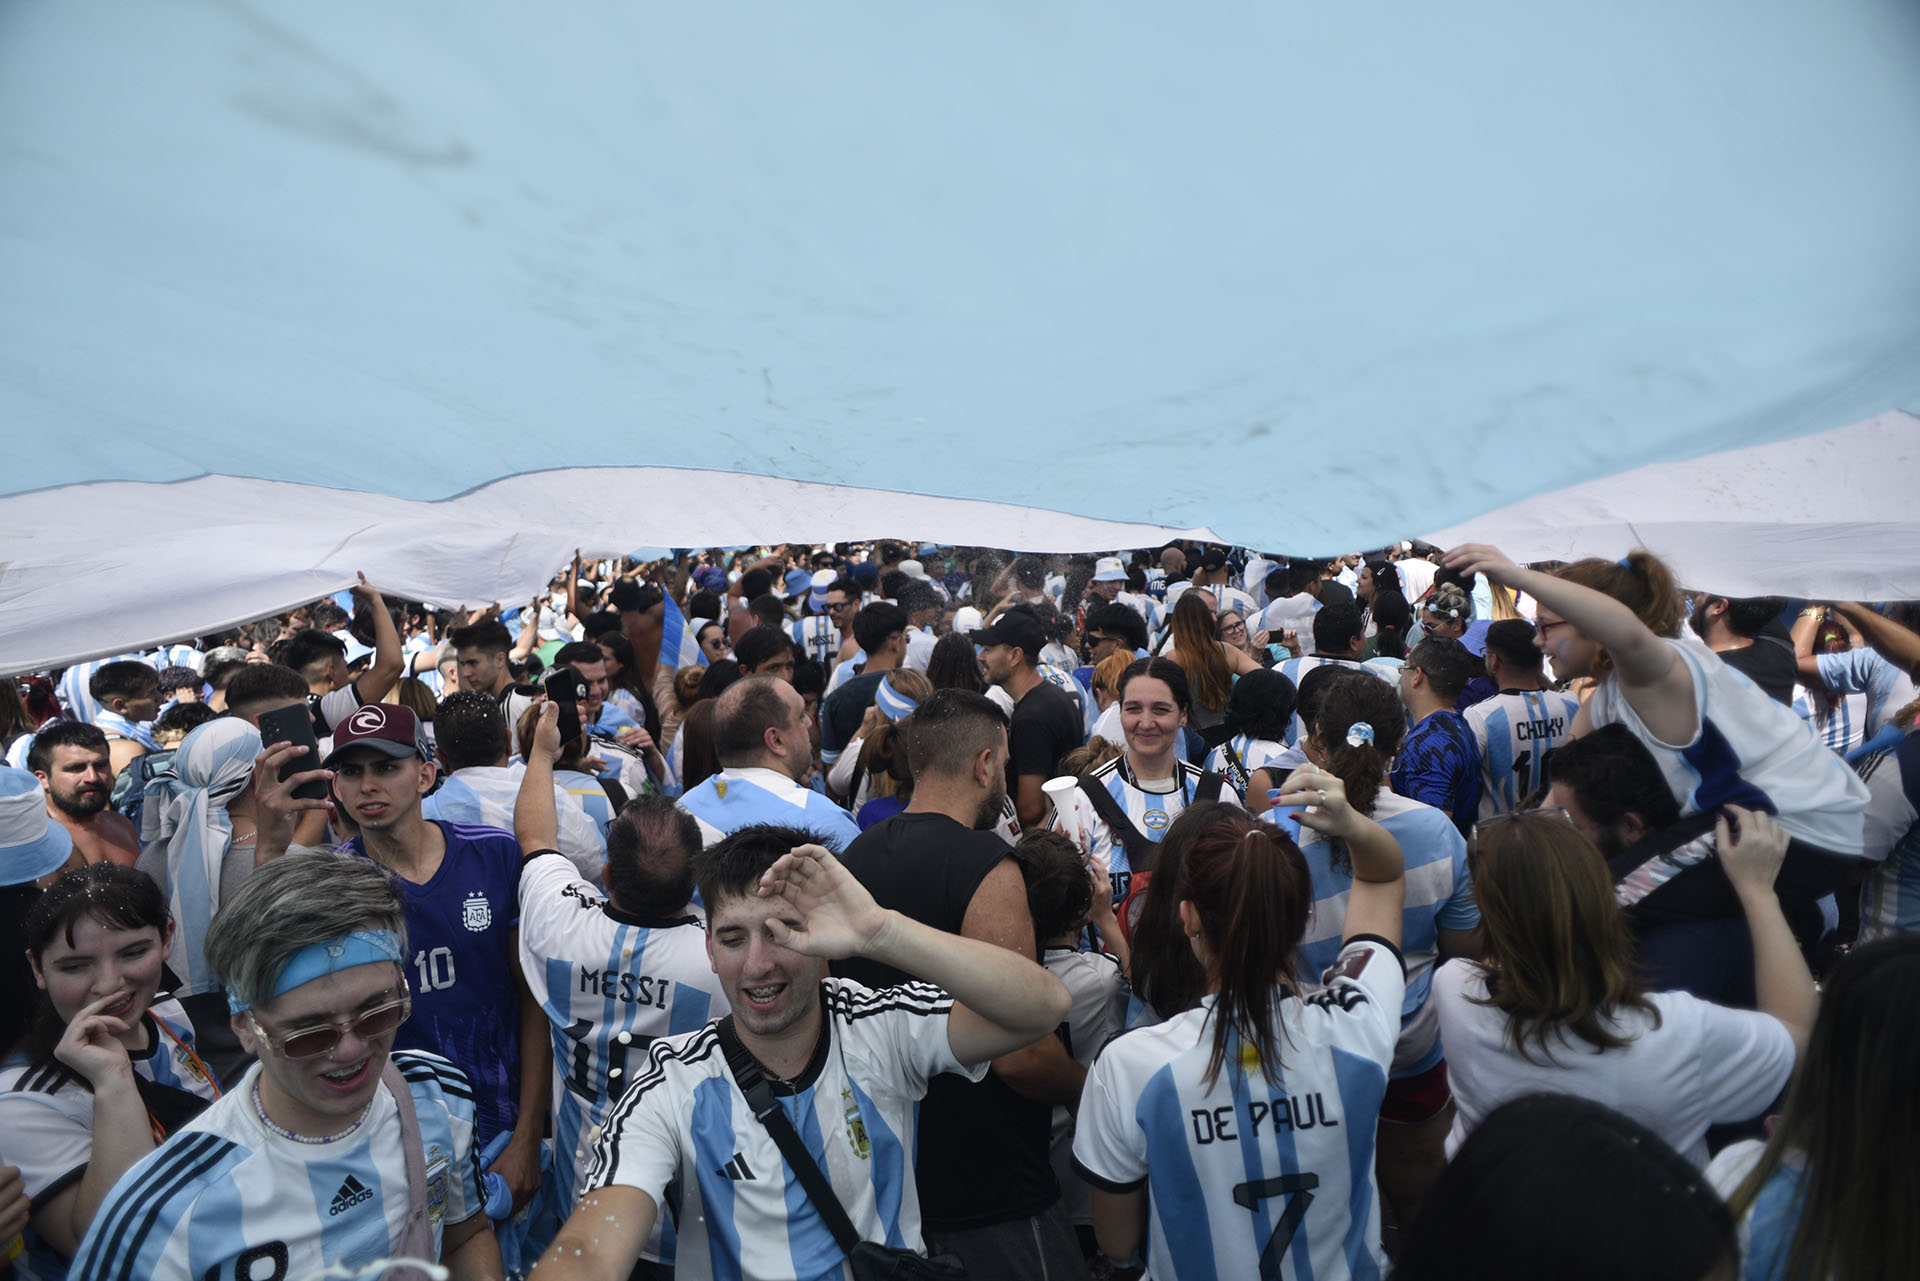 Un poco de sombra bajo la bandera argentina para sostener la fiesta a pesar del intenso calor de la tarde (Crédito: Adrian Escandar)